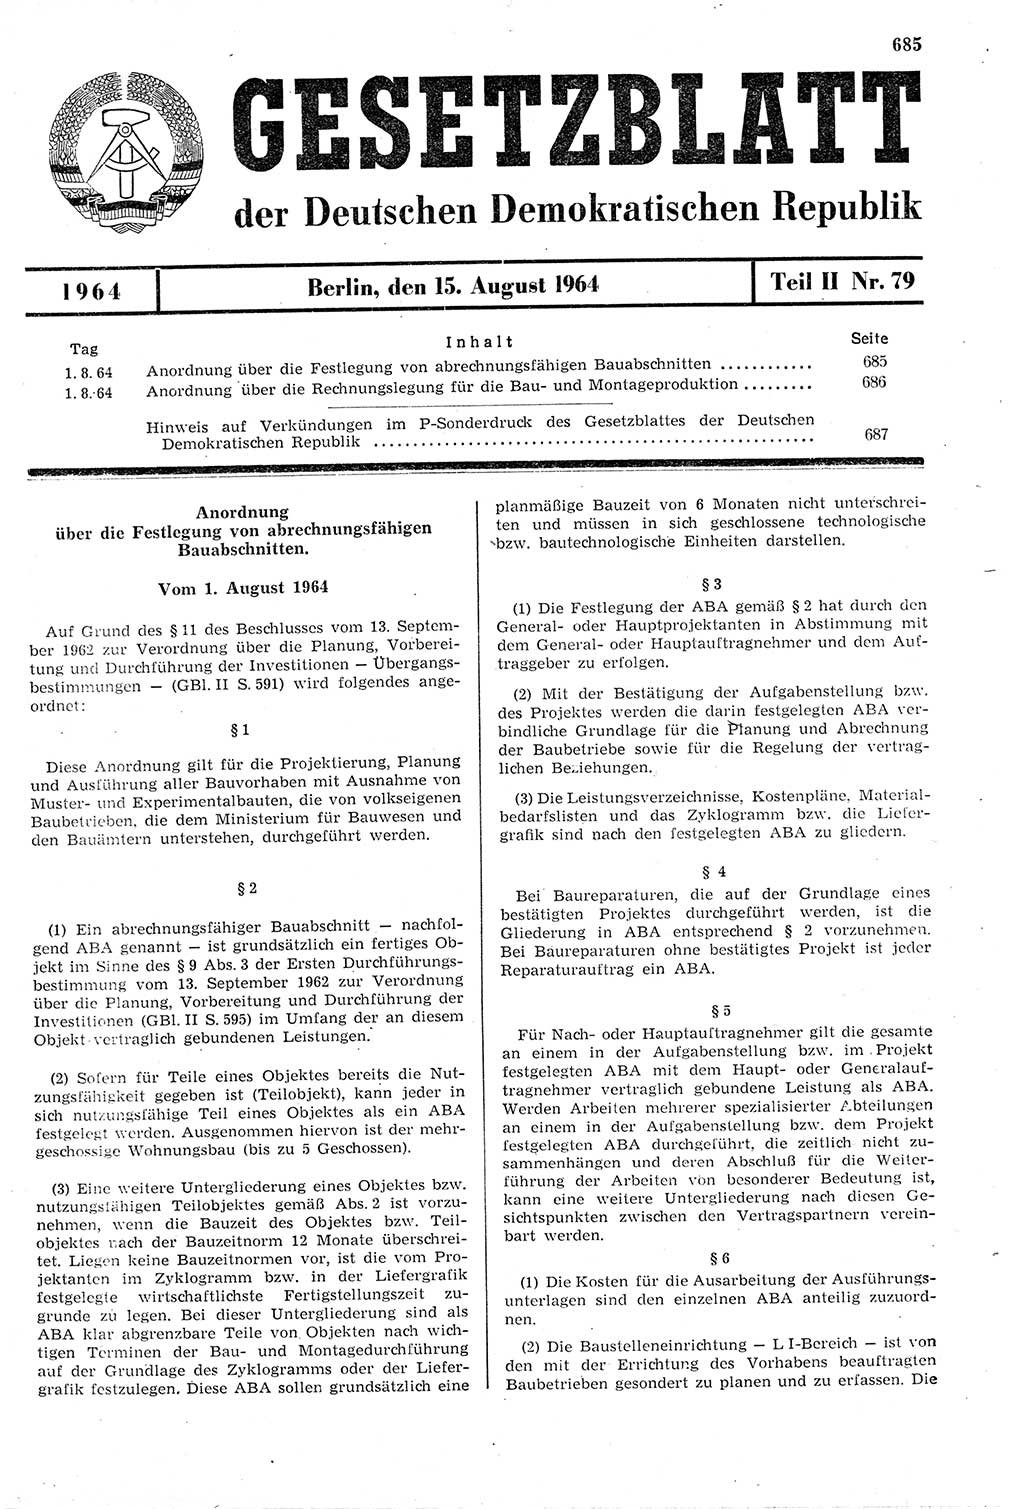 Gesetzblatt (GBl.) der Deutschen Demokratischen Republik (DDR) Teil ⅠⅠ 1964, Seite 685 (GBl. DDR ⅠⅠ 1964, S. 685)